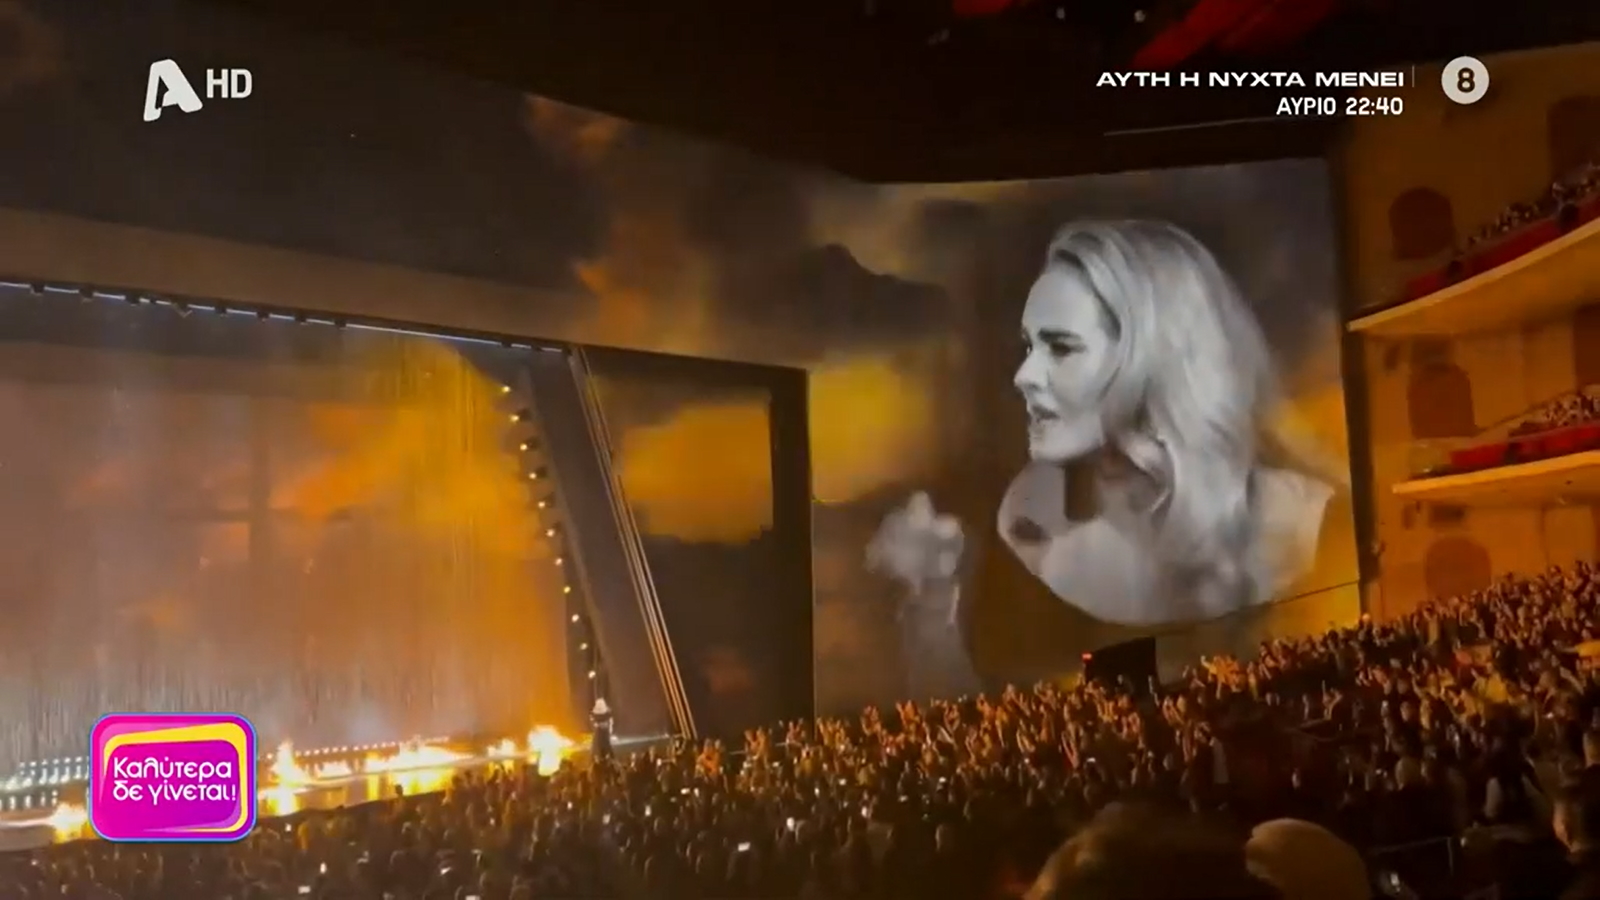 Επική Ναταλία Γερμανού βλέποντας τη συναυλία της Adele: «Μην νομίζεις, αν το δει αυτό ο Φωκάς Ευαγγελινός μπορεί να το κάνει στο J2US»